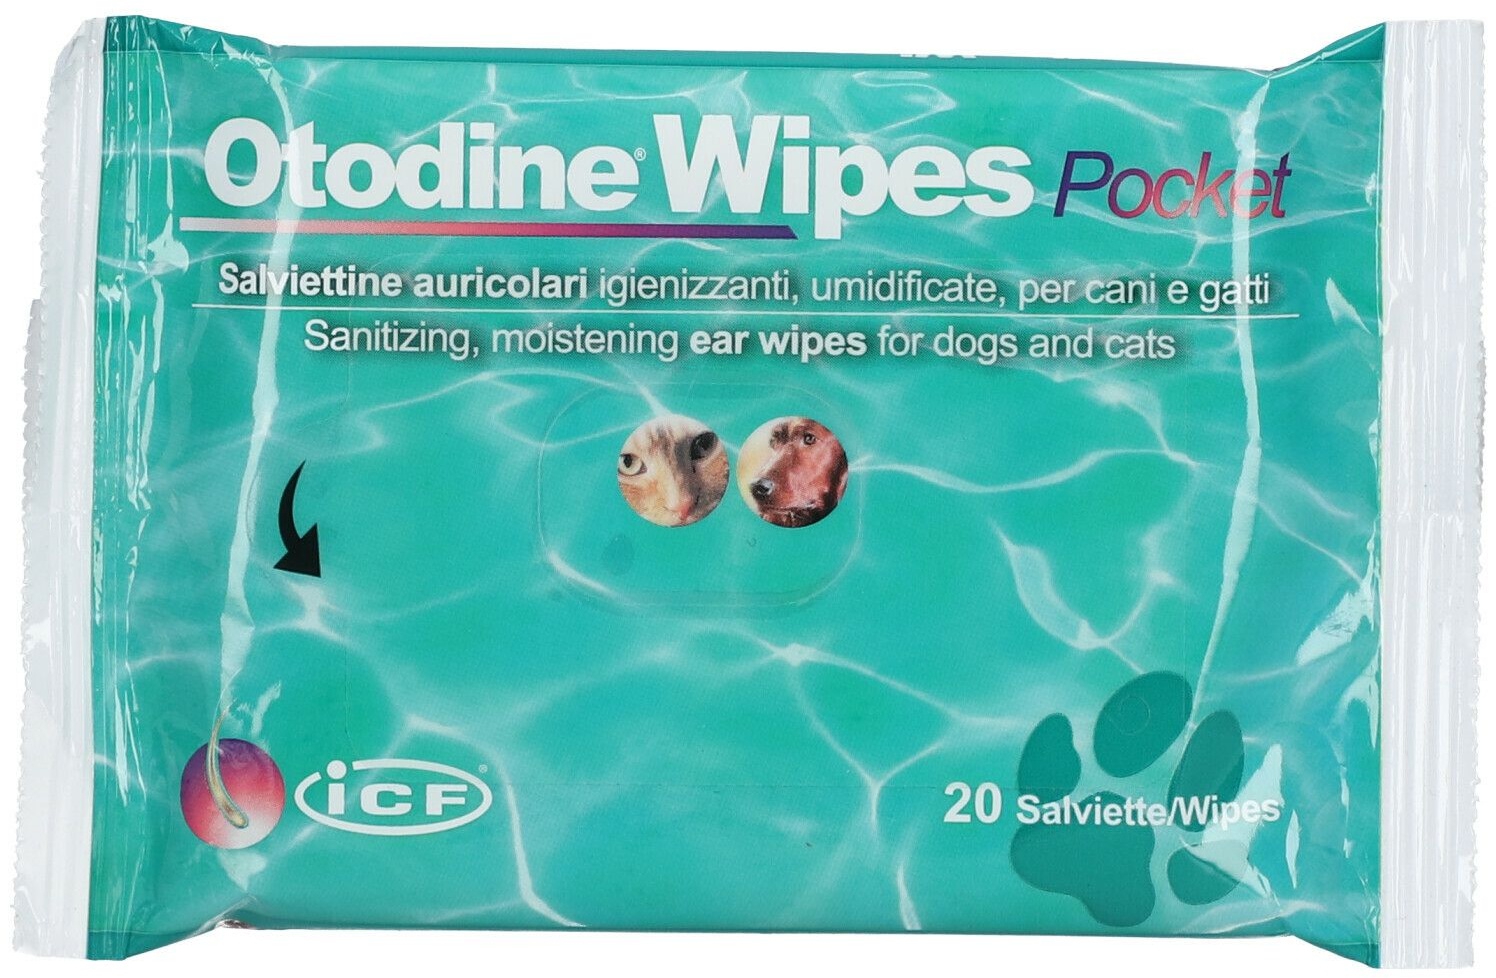 Otodine Wipes Pocket